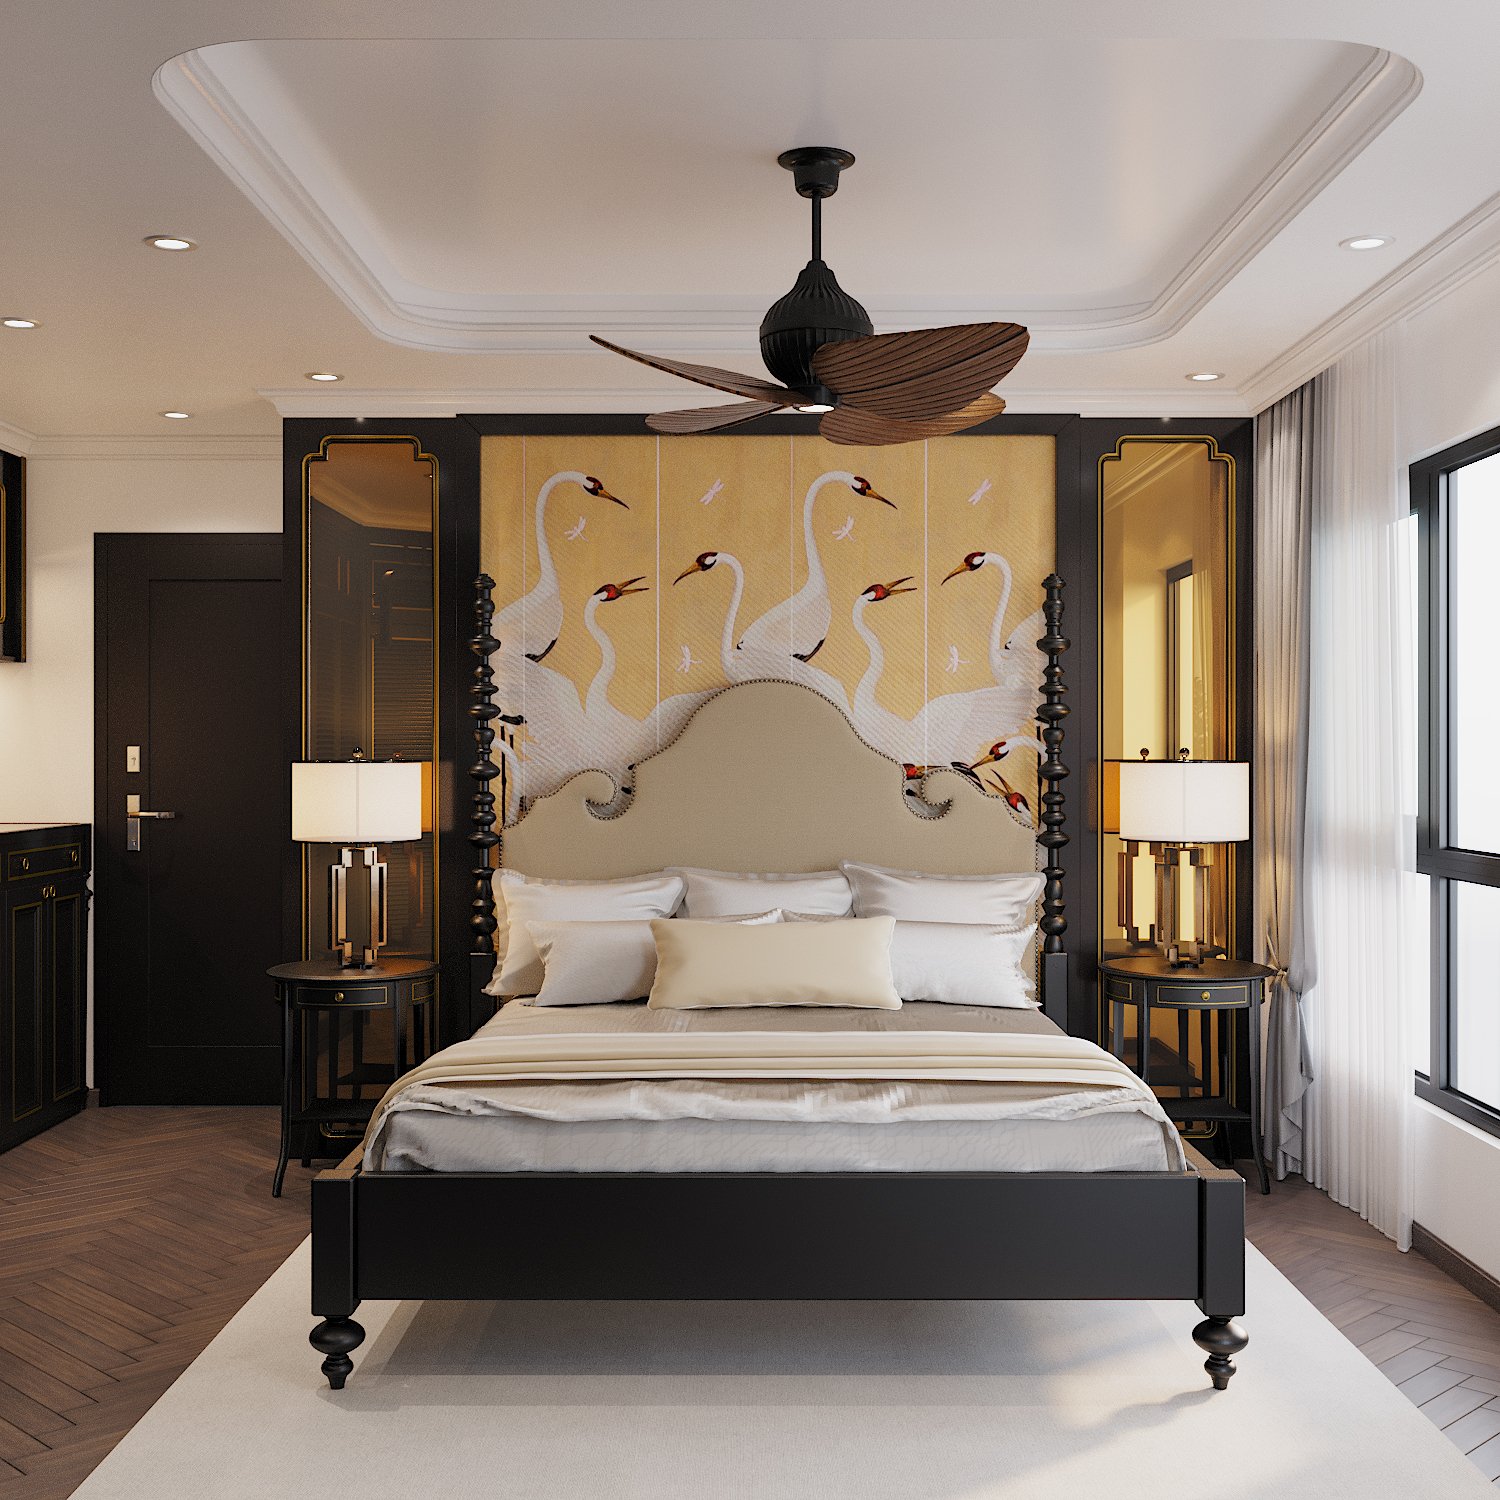 Phòng ngủ master của vợ chồng gia chủ được thiết kế với diện tích rộng rãi, sử dụng nội thất cao cấp với điểm nhấn là tranh tường đầu giường.